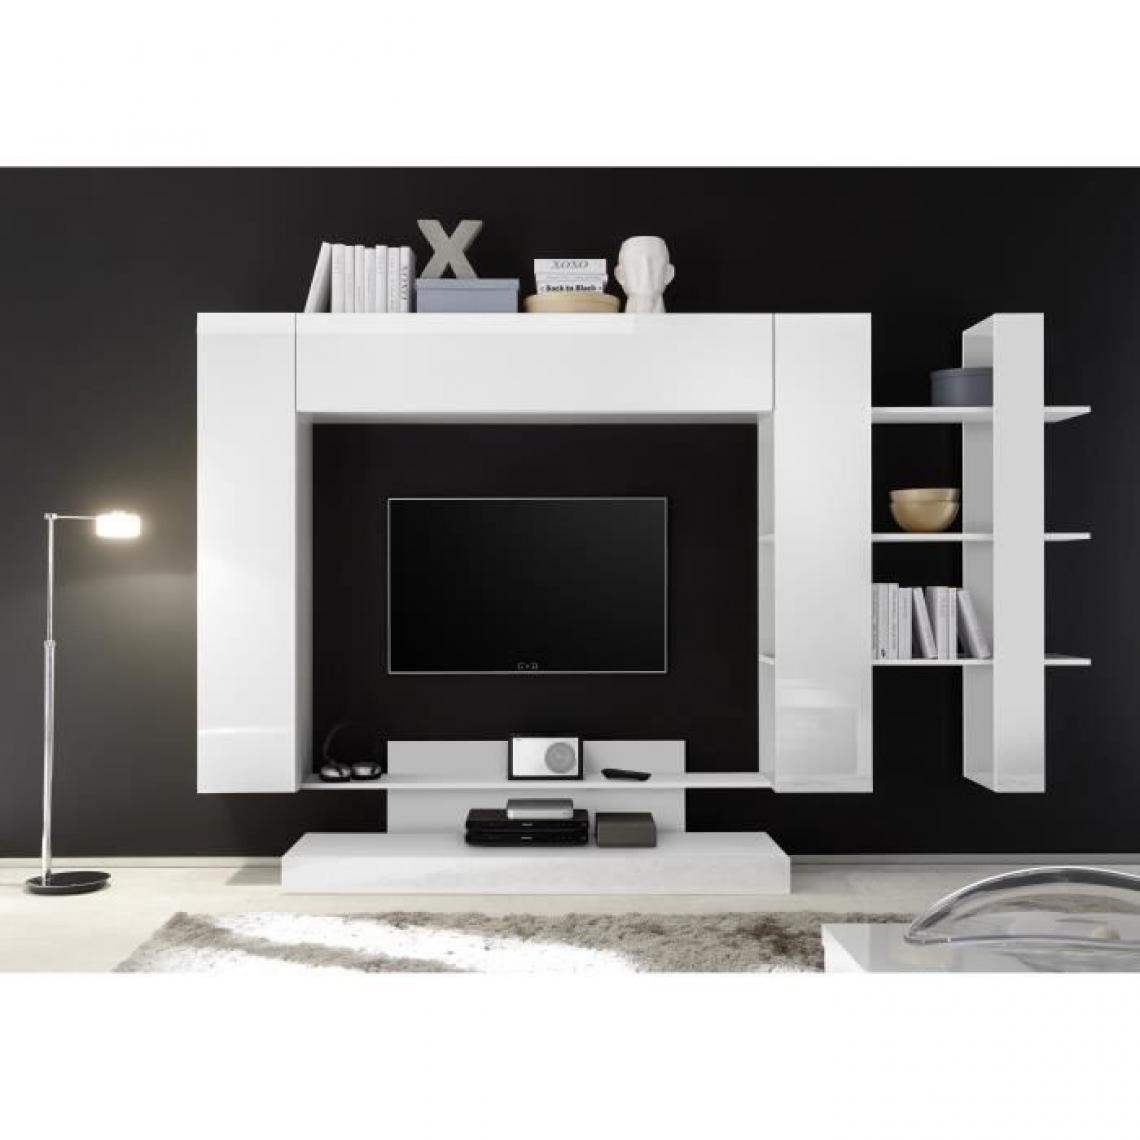 Cstore - Meuble TV Mural 2 portes - Laqué Noir et Blanc - L 259 x P 42 x H 175 cm - NAPOLI - Meubles TV, Hi-Fi